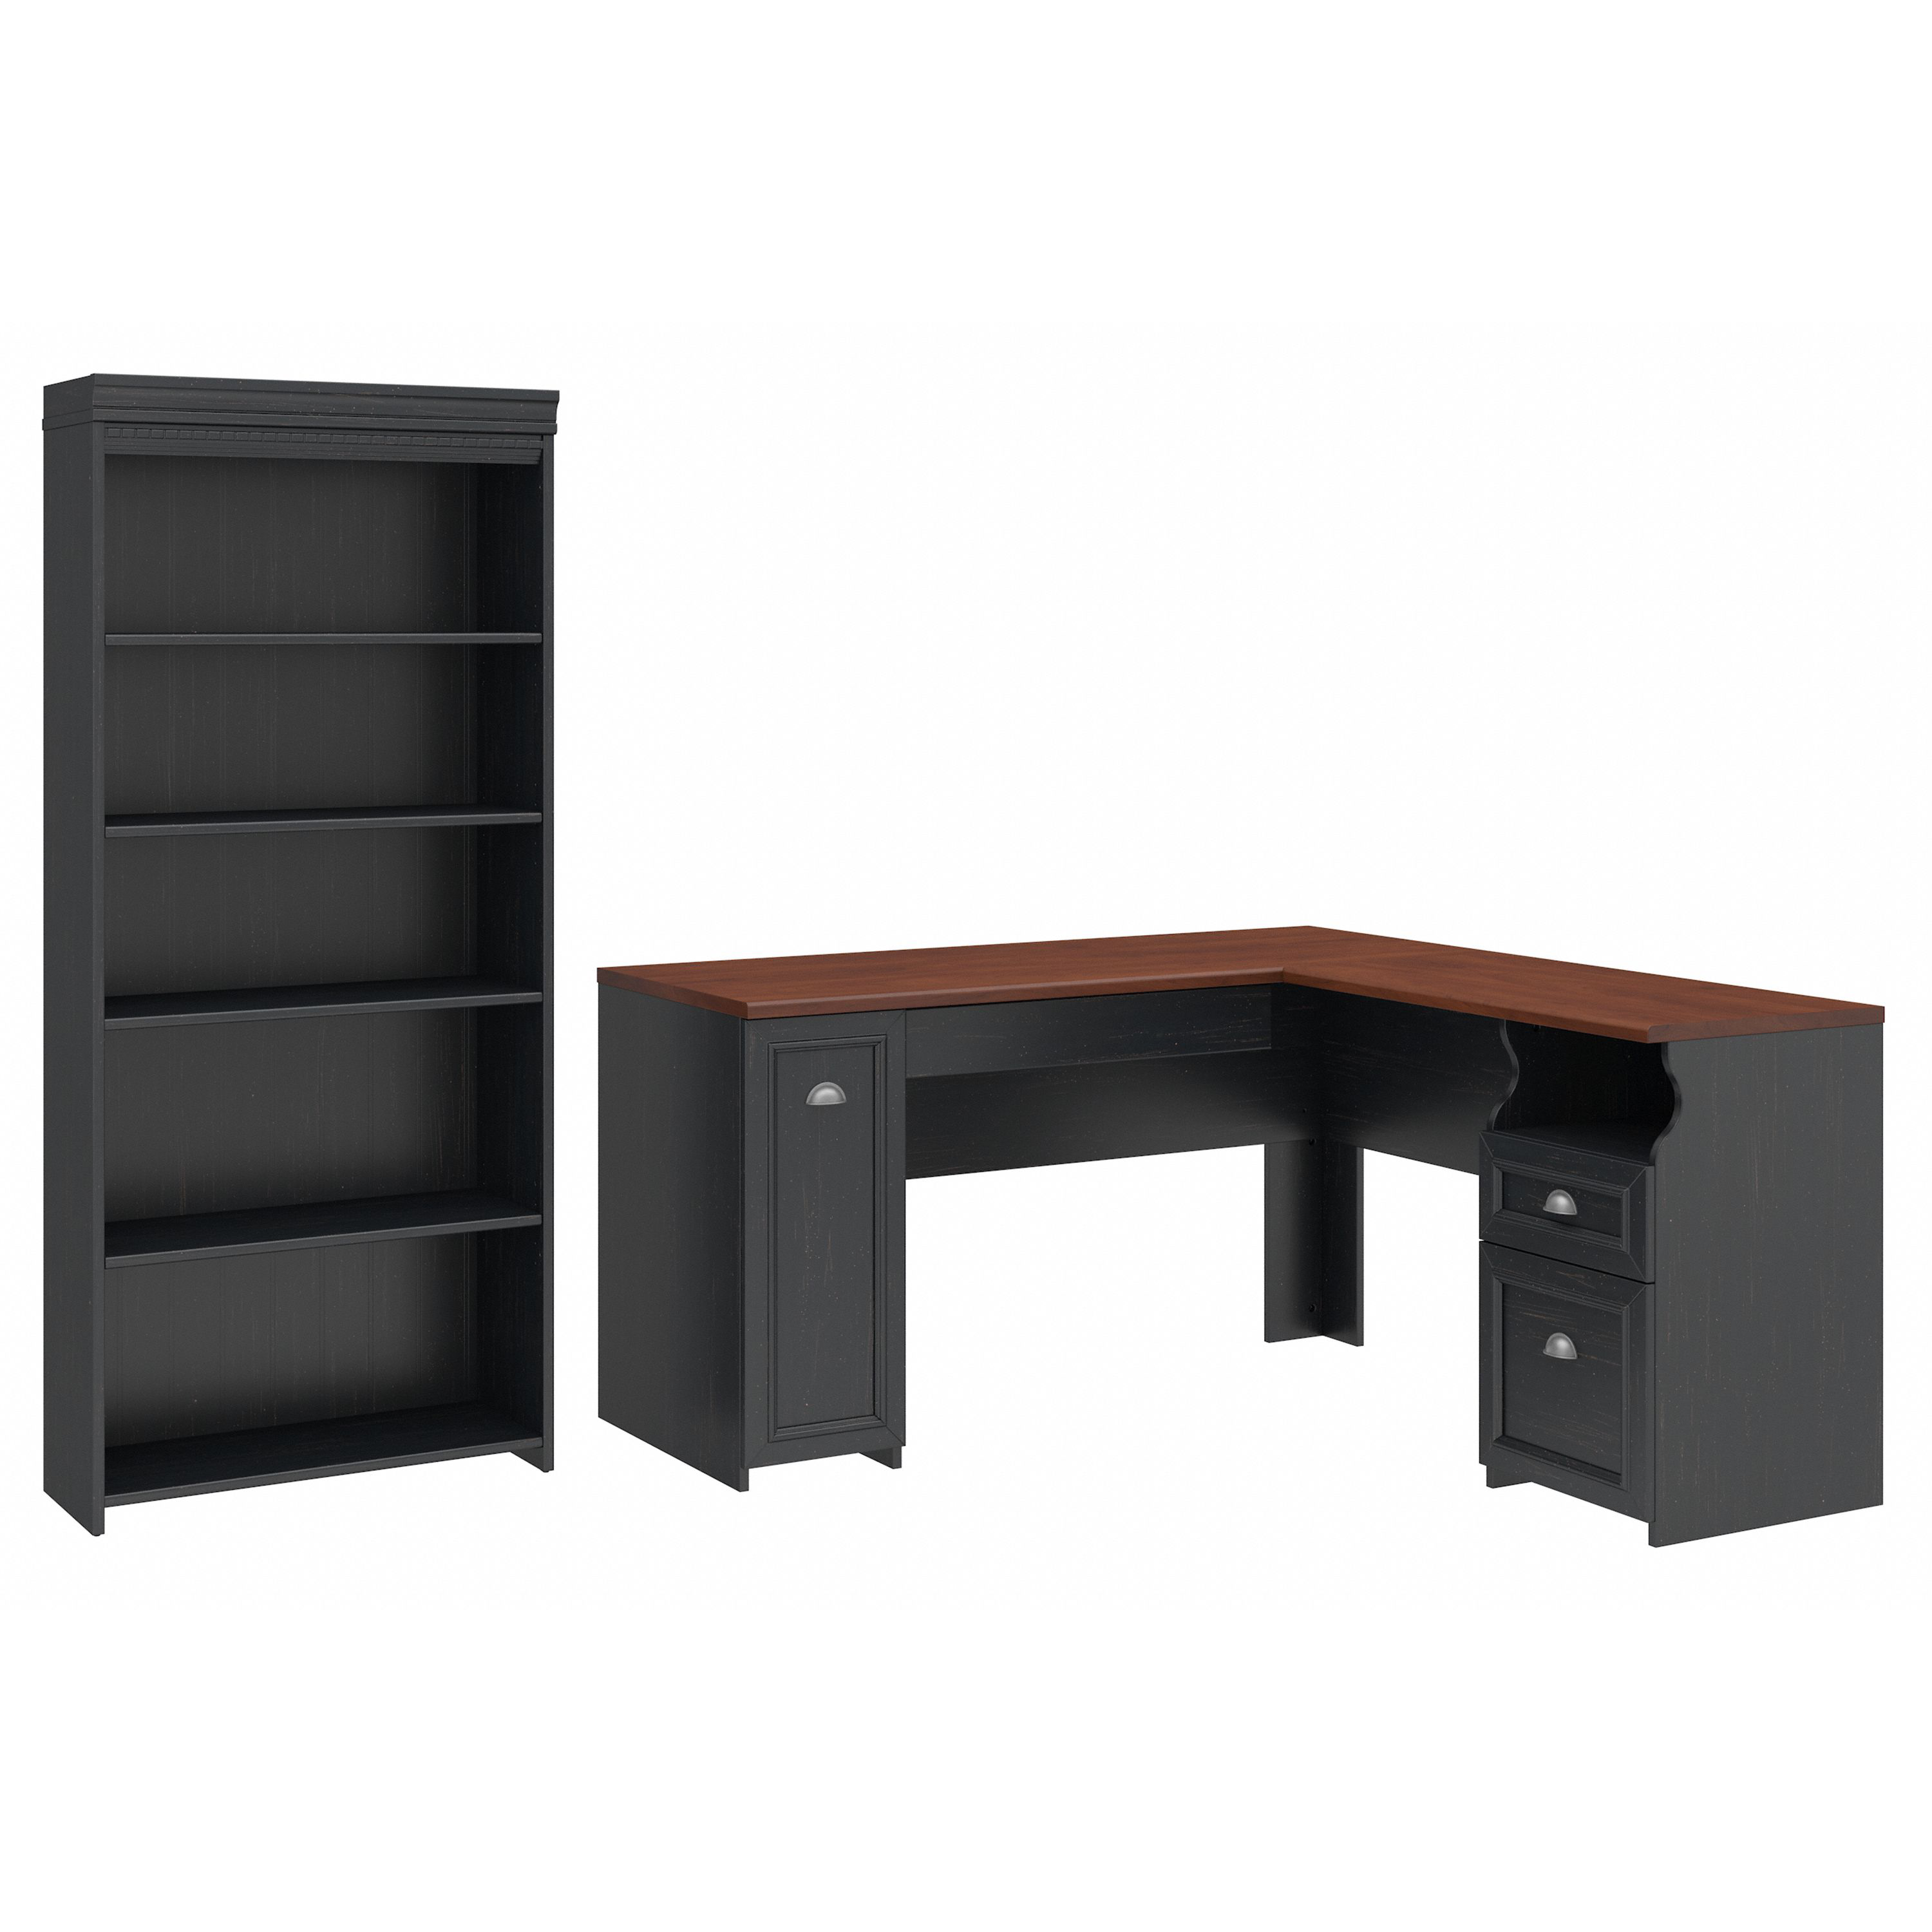 Shop Bush Furniture Fairview 60W L Shaped Desk with 5 Shelf Bookcase 02 FV007AB #color_antique black